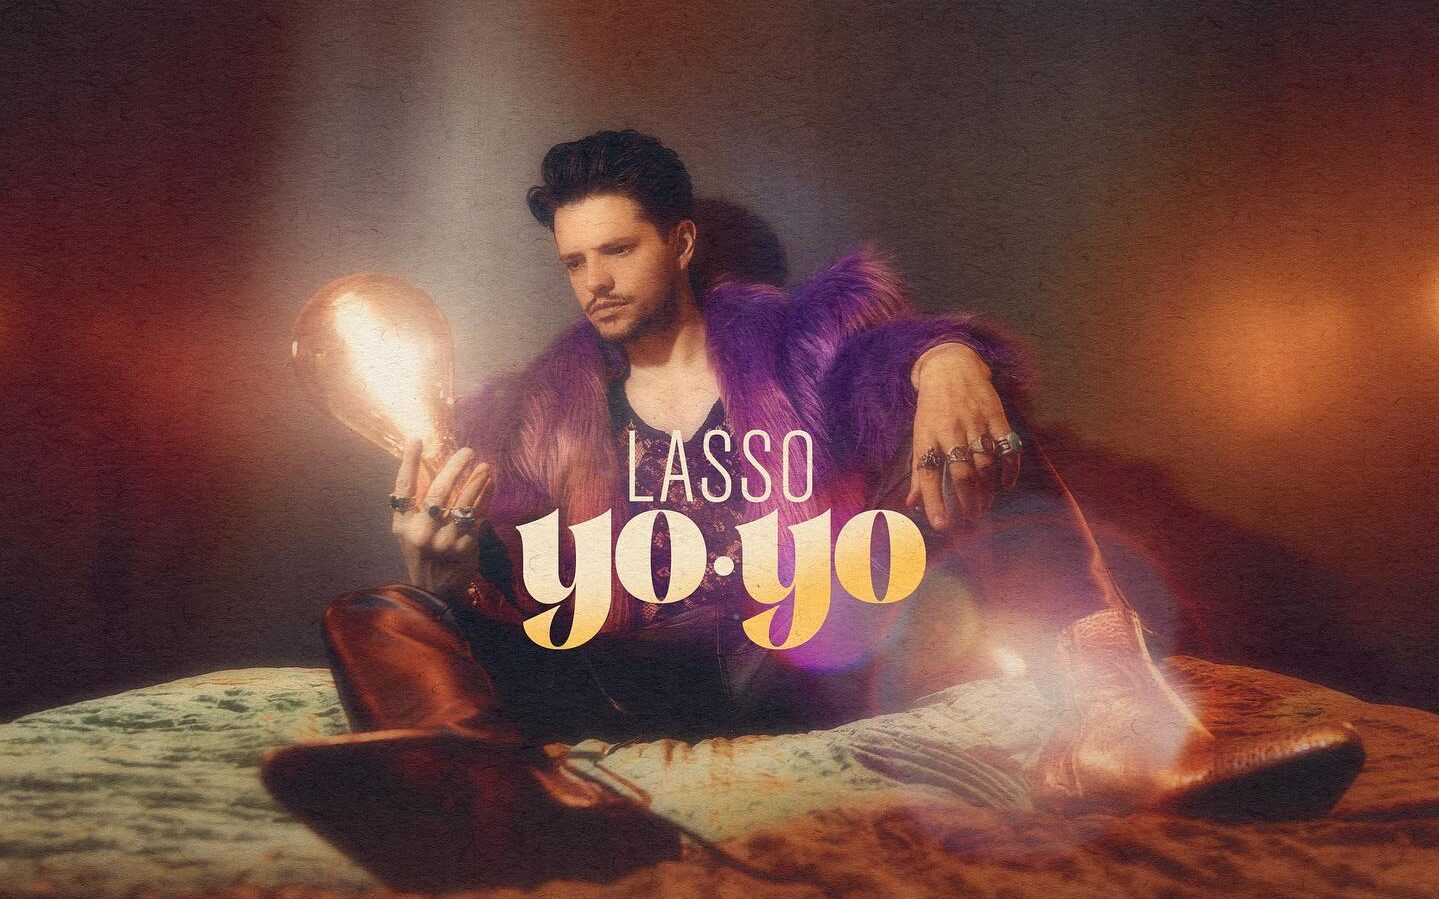 Lasso presenta su nuevo single ‘Yo-yo’